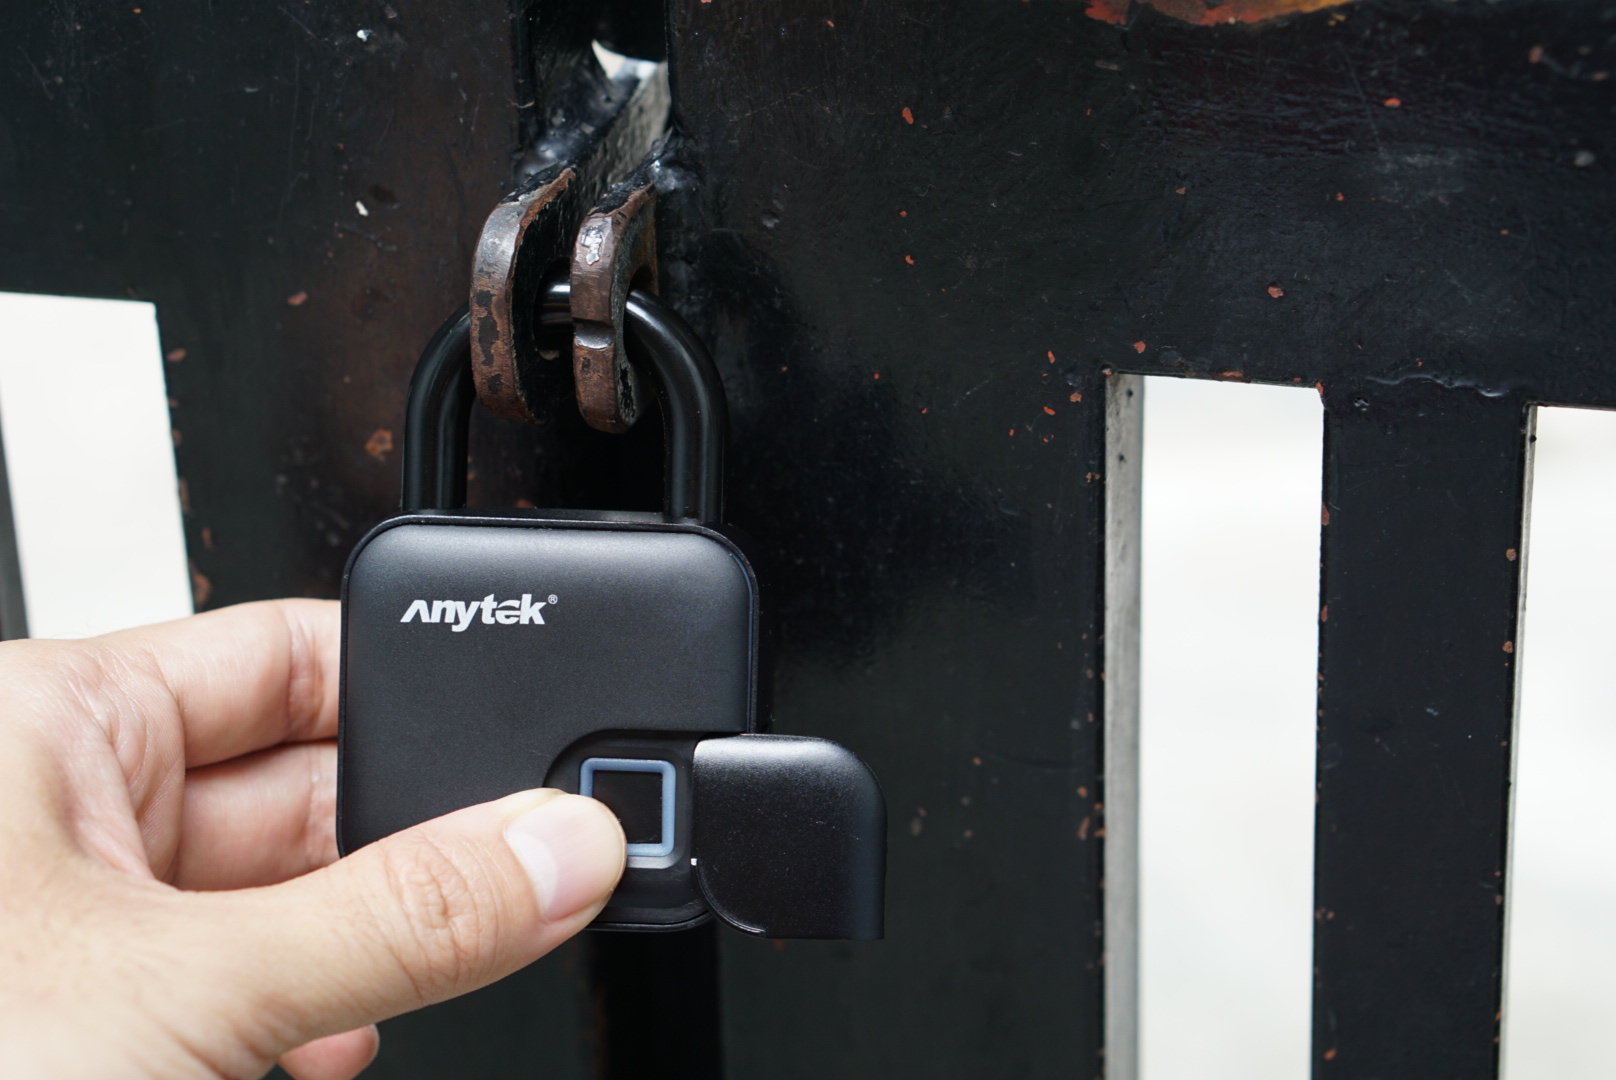 Muốn tìm một ổ khóa cửa vân tay hiện đại và thiết kế đẹp mắt? Anytek là một lựa chọn tuyệt vời. Với khả năng đọc vân tay trong vòng 0,3 giây, đồng thời cung cấp mật độ vân tay 508DPI rất nhanh chóng và an toàn.